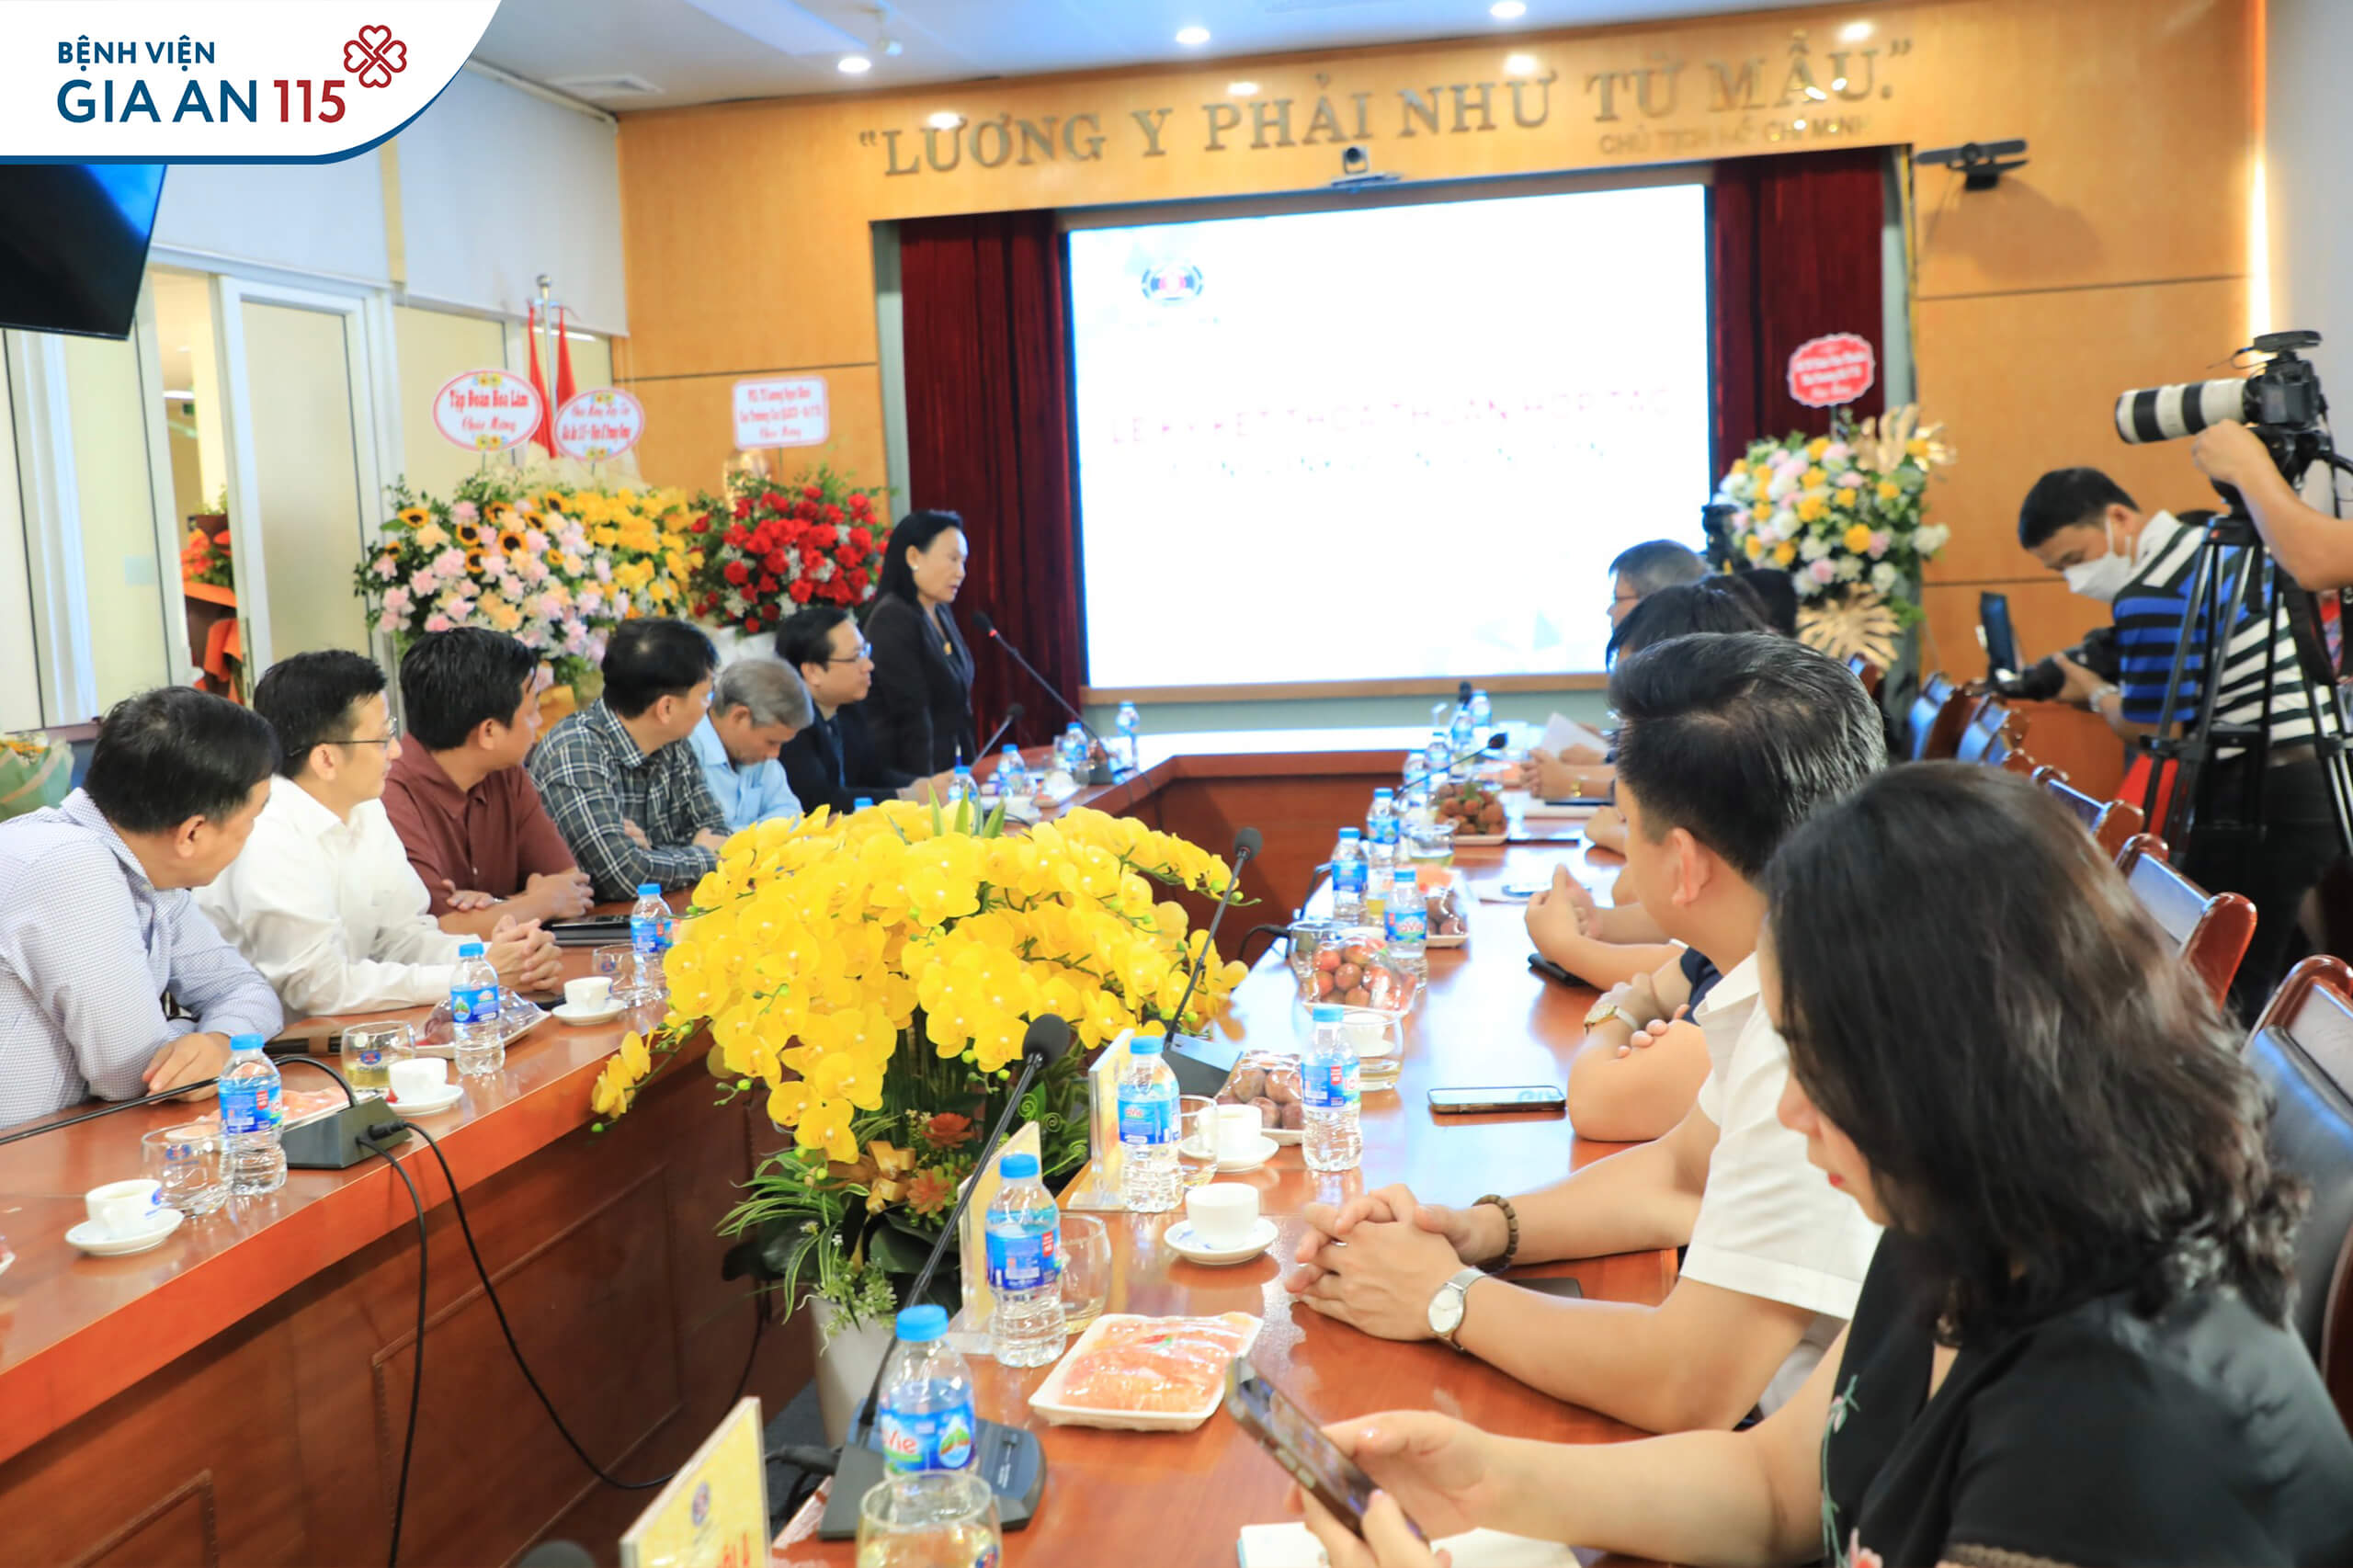 Bà Trần Thị Lâm - Nhà sáng lập, Chủ tịch Tập đoàn Hoa Lâm phát biểu tại sự kiện